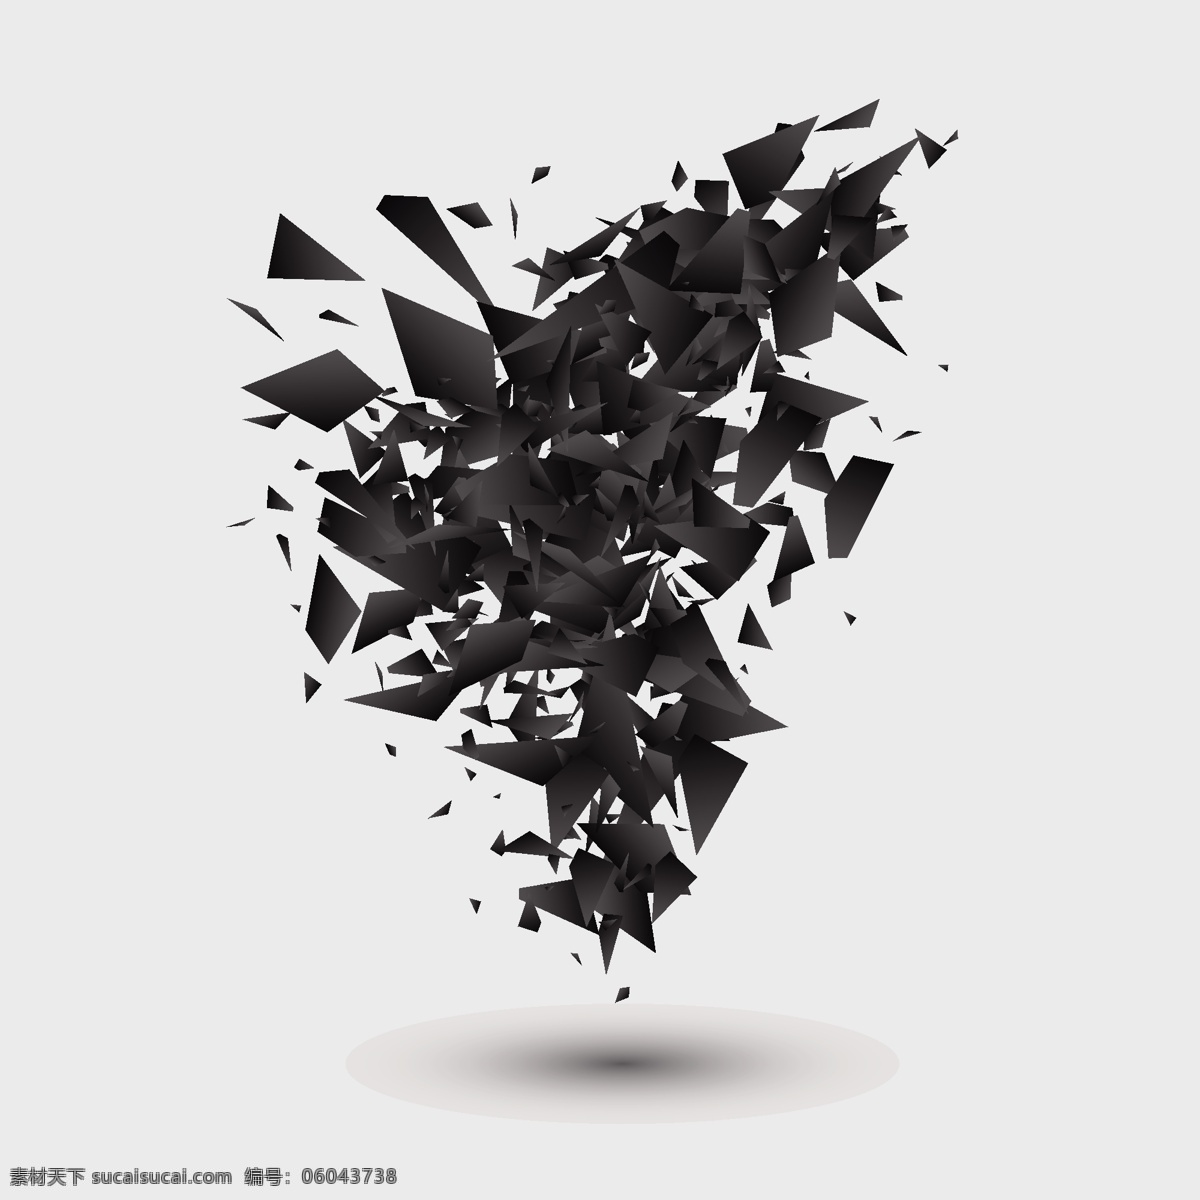 艺术几何碎片 抽象 艺术 抽象艺术 几何艺术 碎片 爆炸效果 碎片效果 黑色 几何化 爆炸 矢量 底纹边框 抽象底纹 特效效果